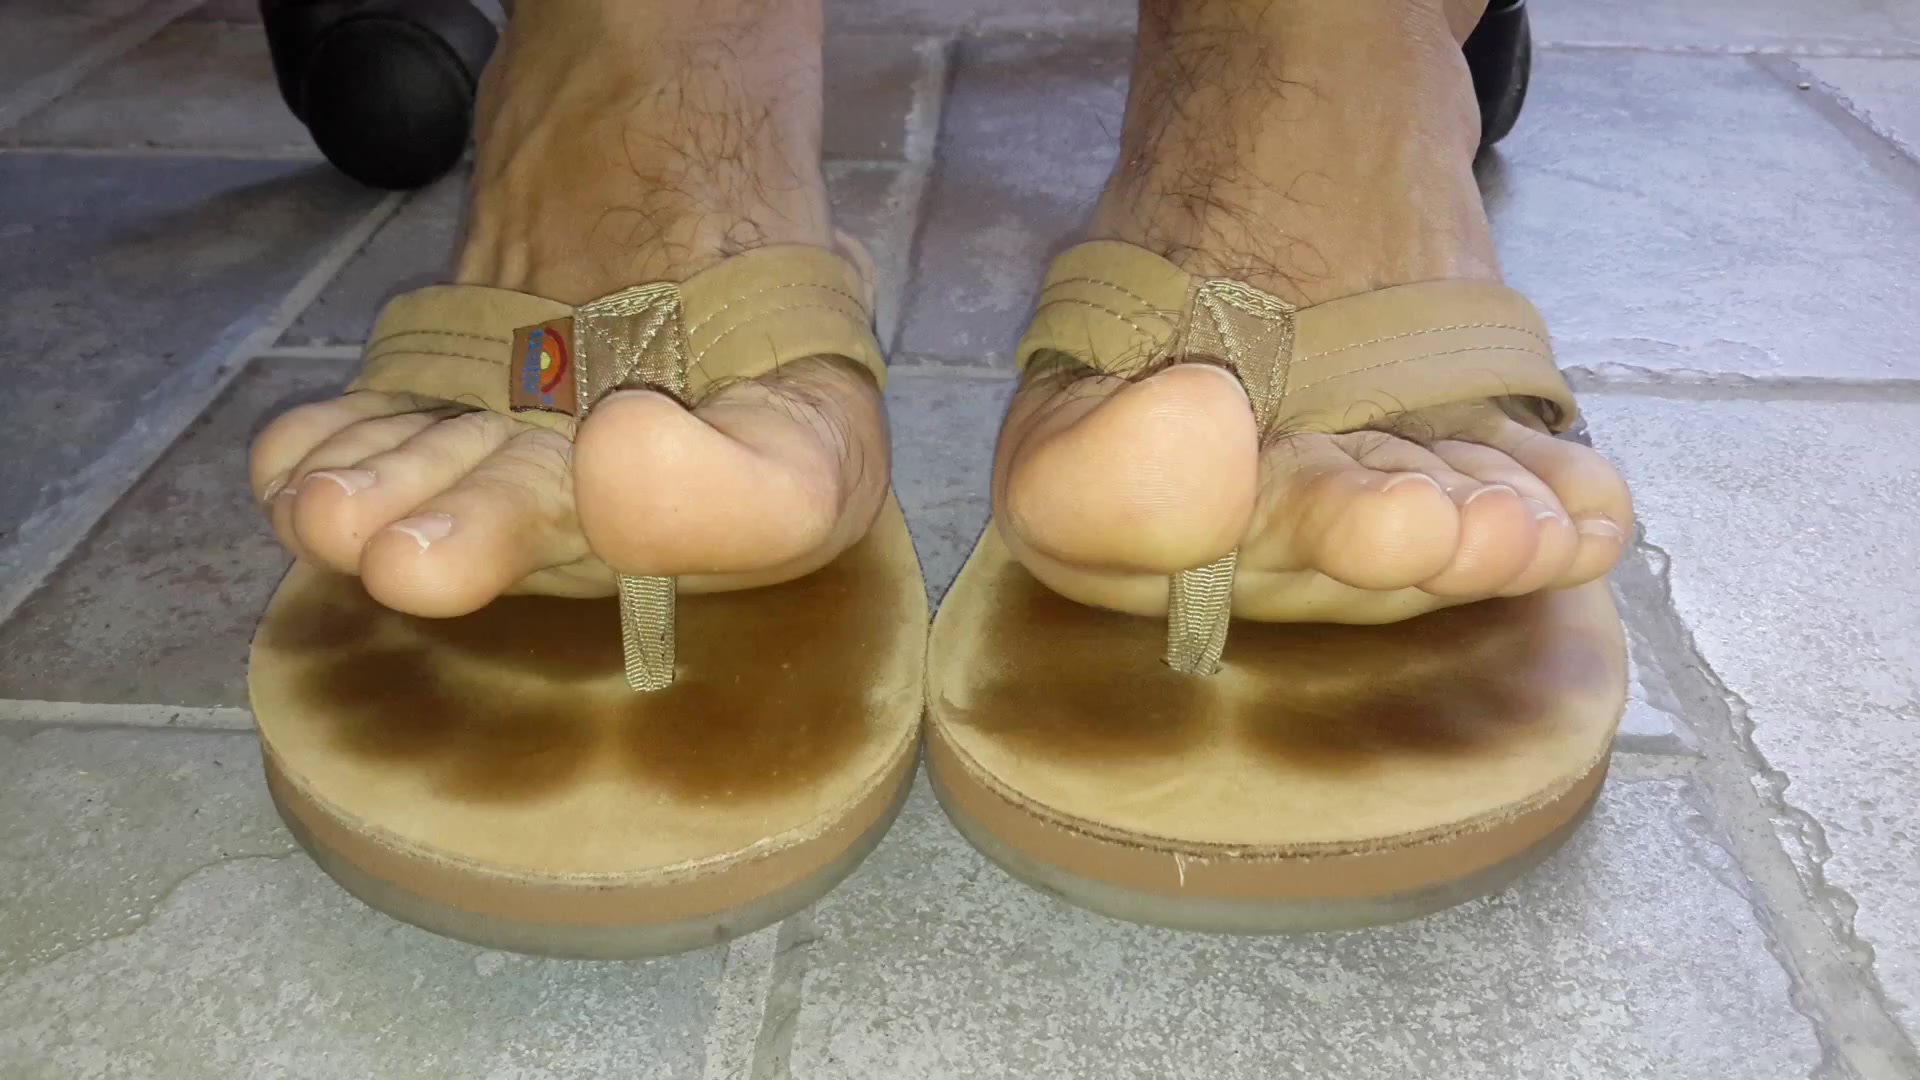 Male feet in flip flops - video 3